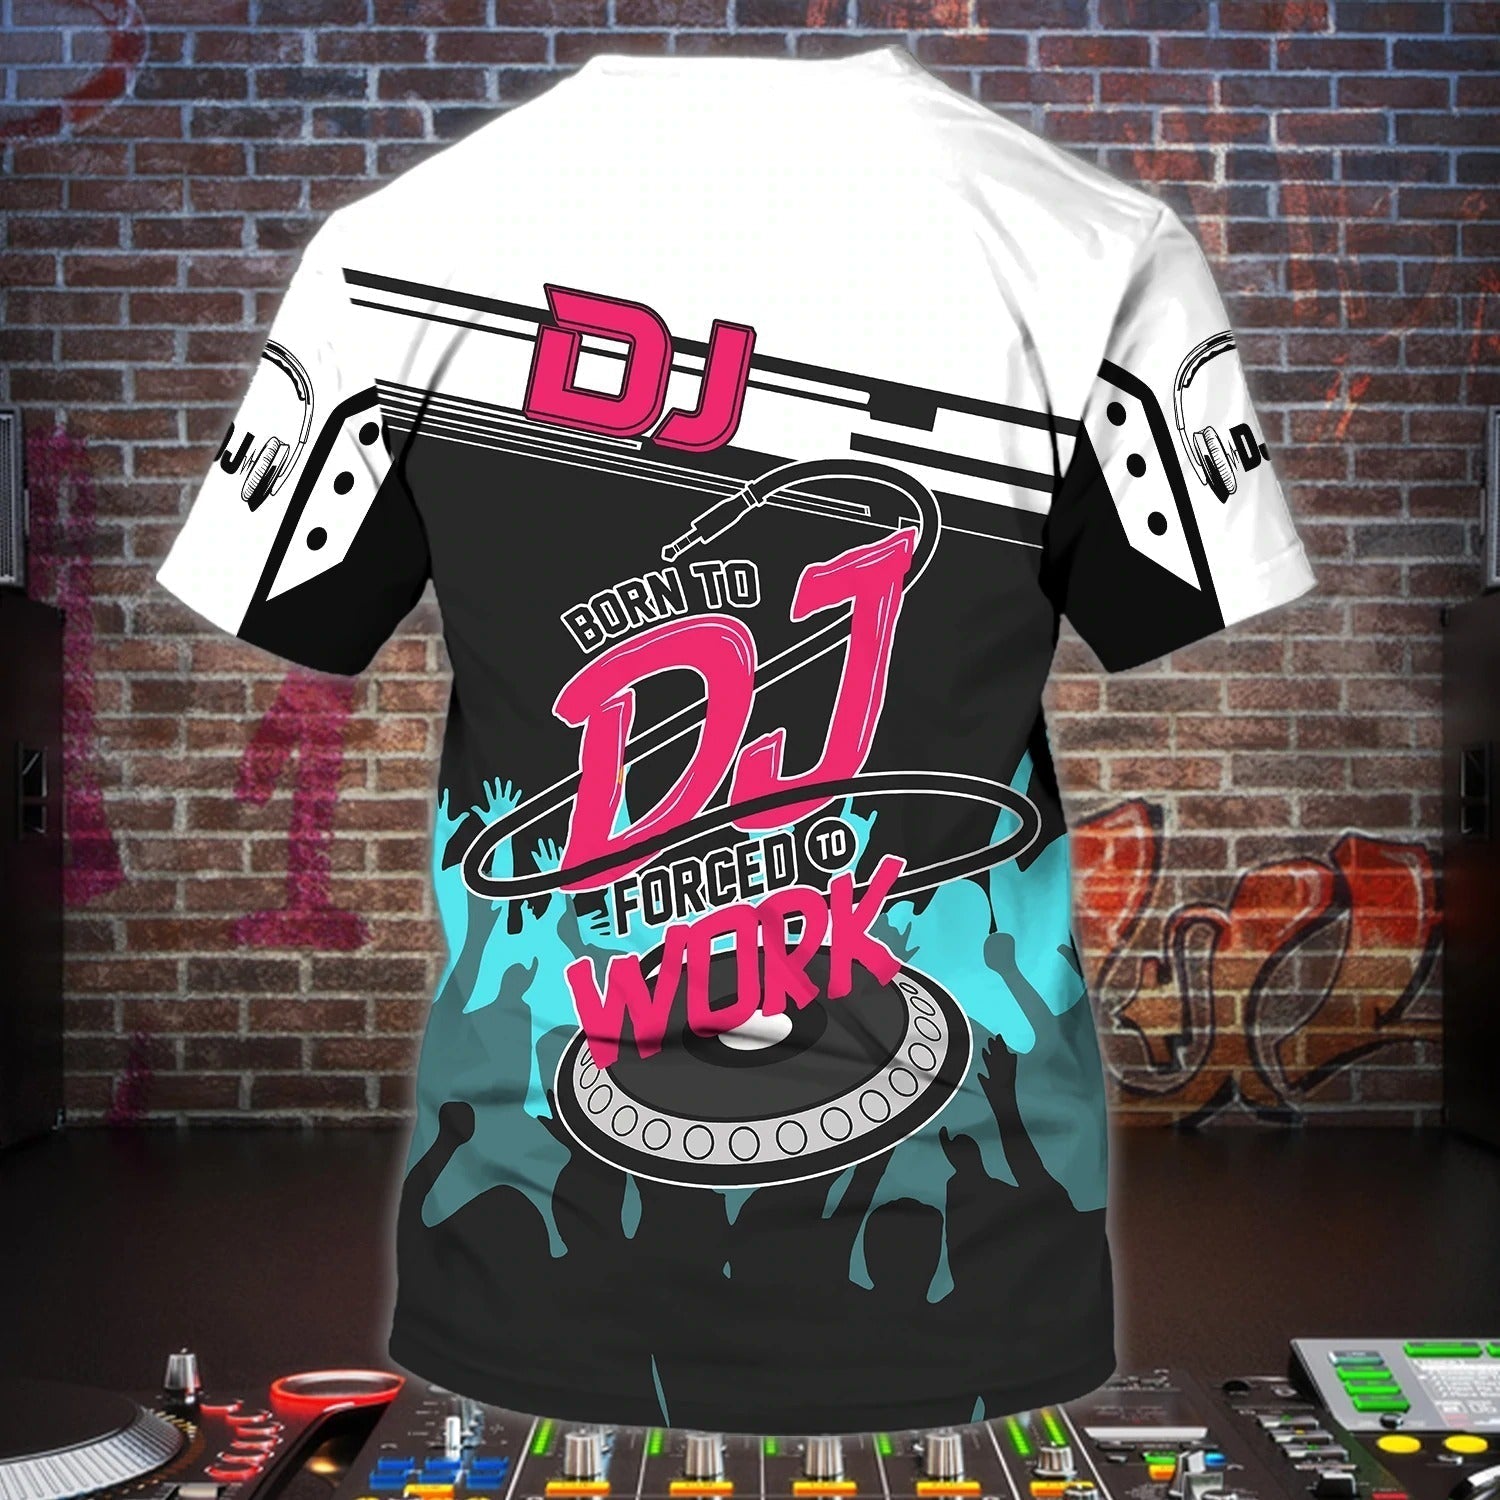 Personalized Best Dj Ever Tshirt/ Playing Dj Shirts/ Nonstop Shirts/ Night Club Shirts/ Cool 3D Disc Jockey Shirt